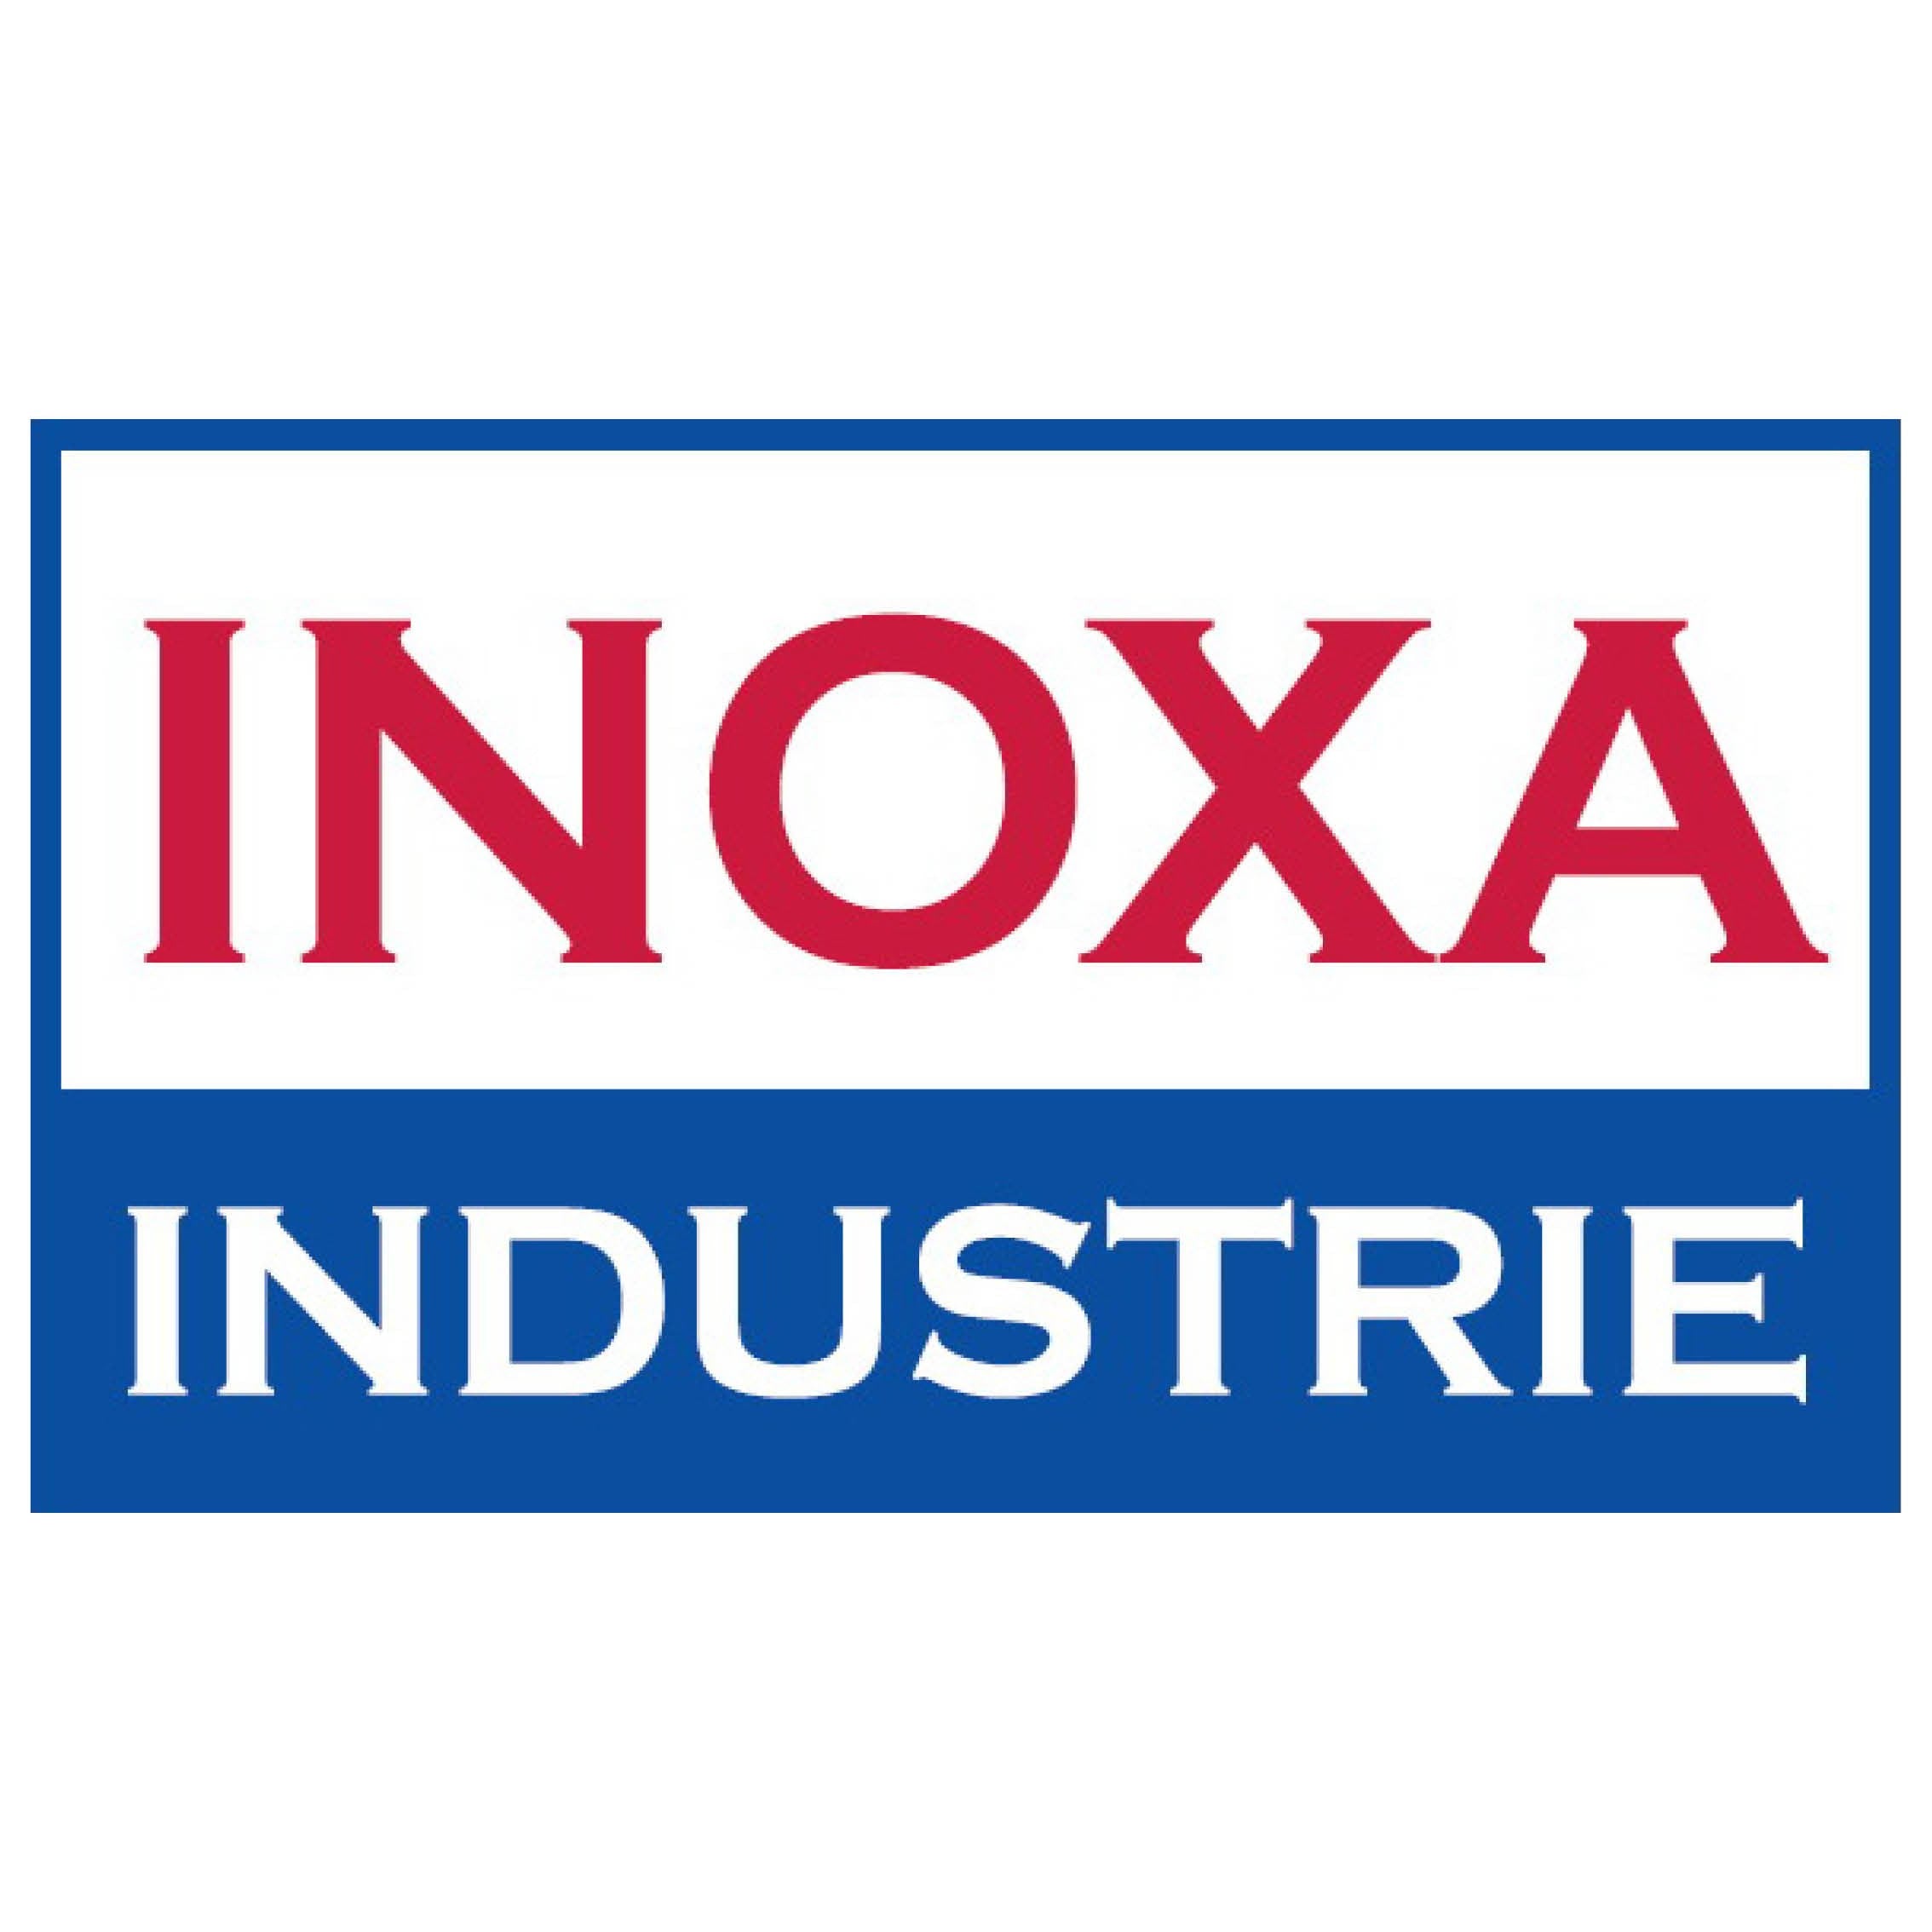 INOXA-Made in Italy